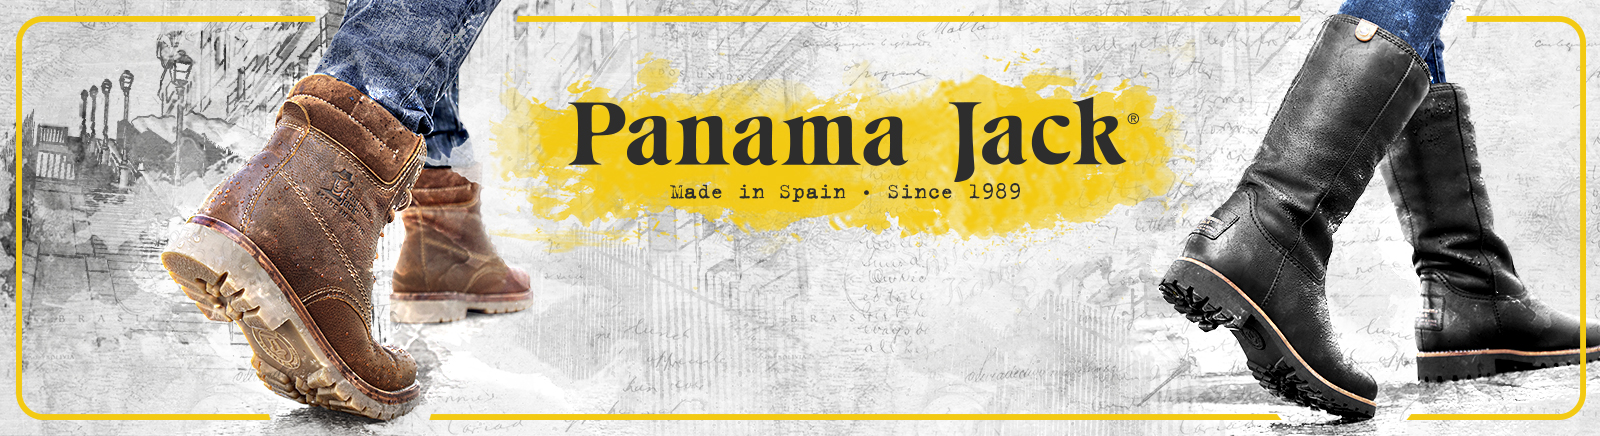 Prange: Panama Jack Pantoletten für Damen online shoppen